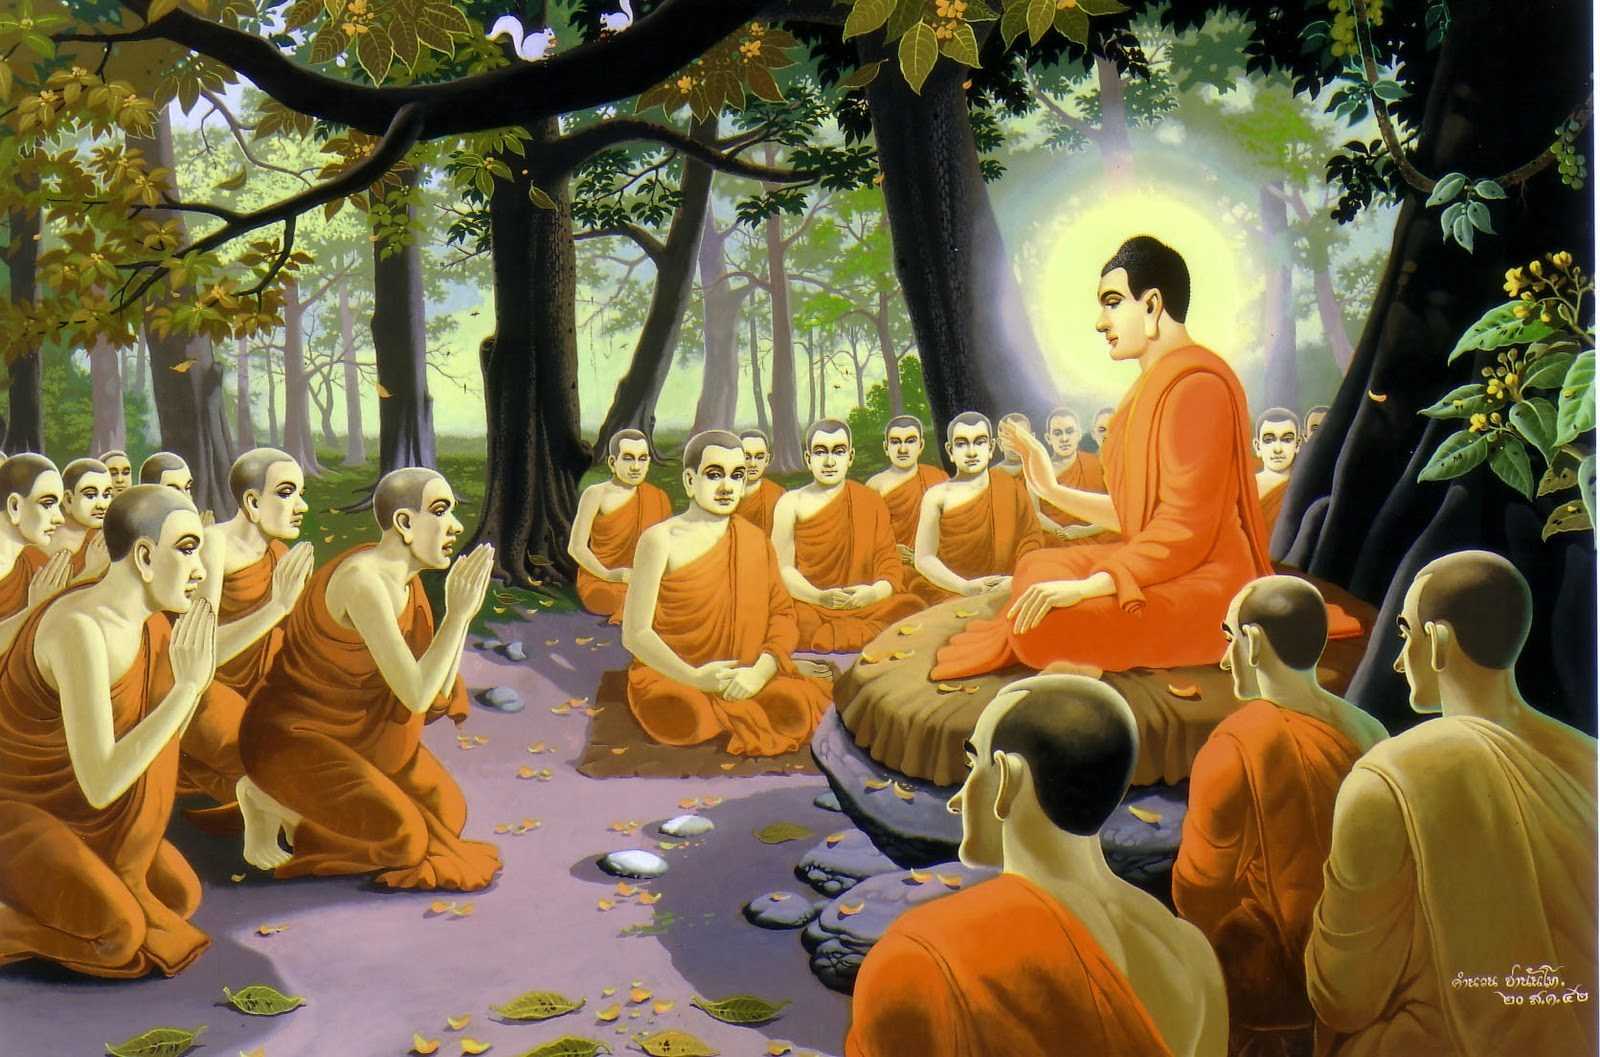 Đức Phật đã mang ánh sáng Chính Pháp, cứu chúng sinh thoát khỏi khổ đau do vô minh